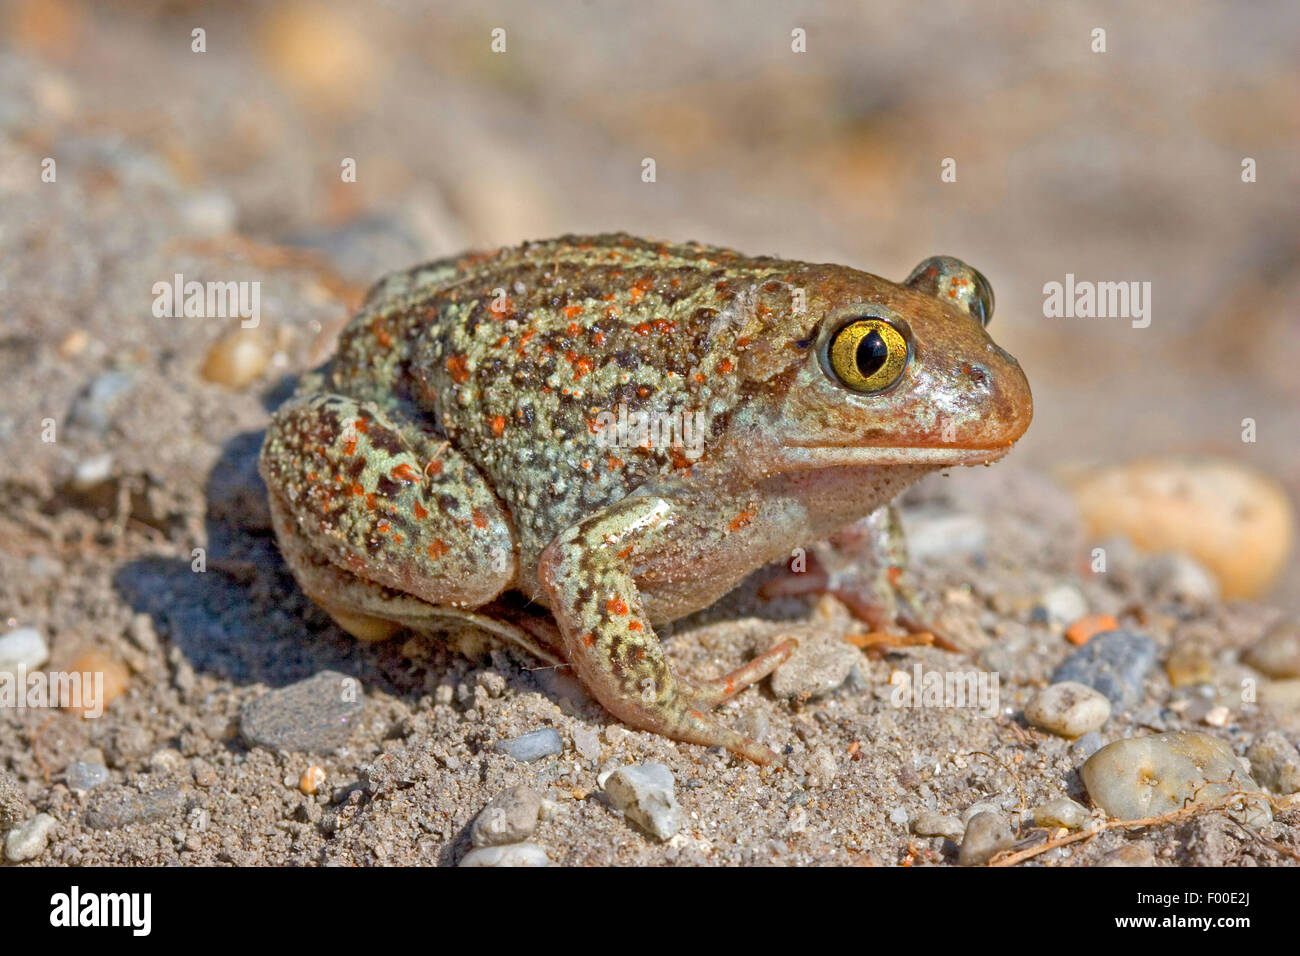 Común, ajo spadefoot toad (Pelobates fuscus), sentado en el suelo, vista lateral, Alemania Foto de stock